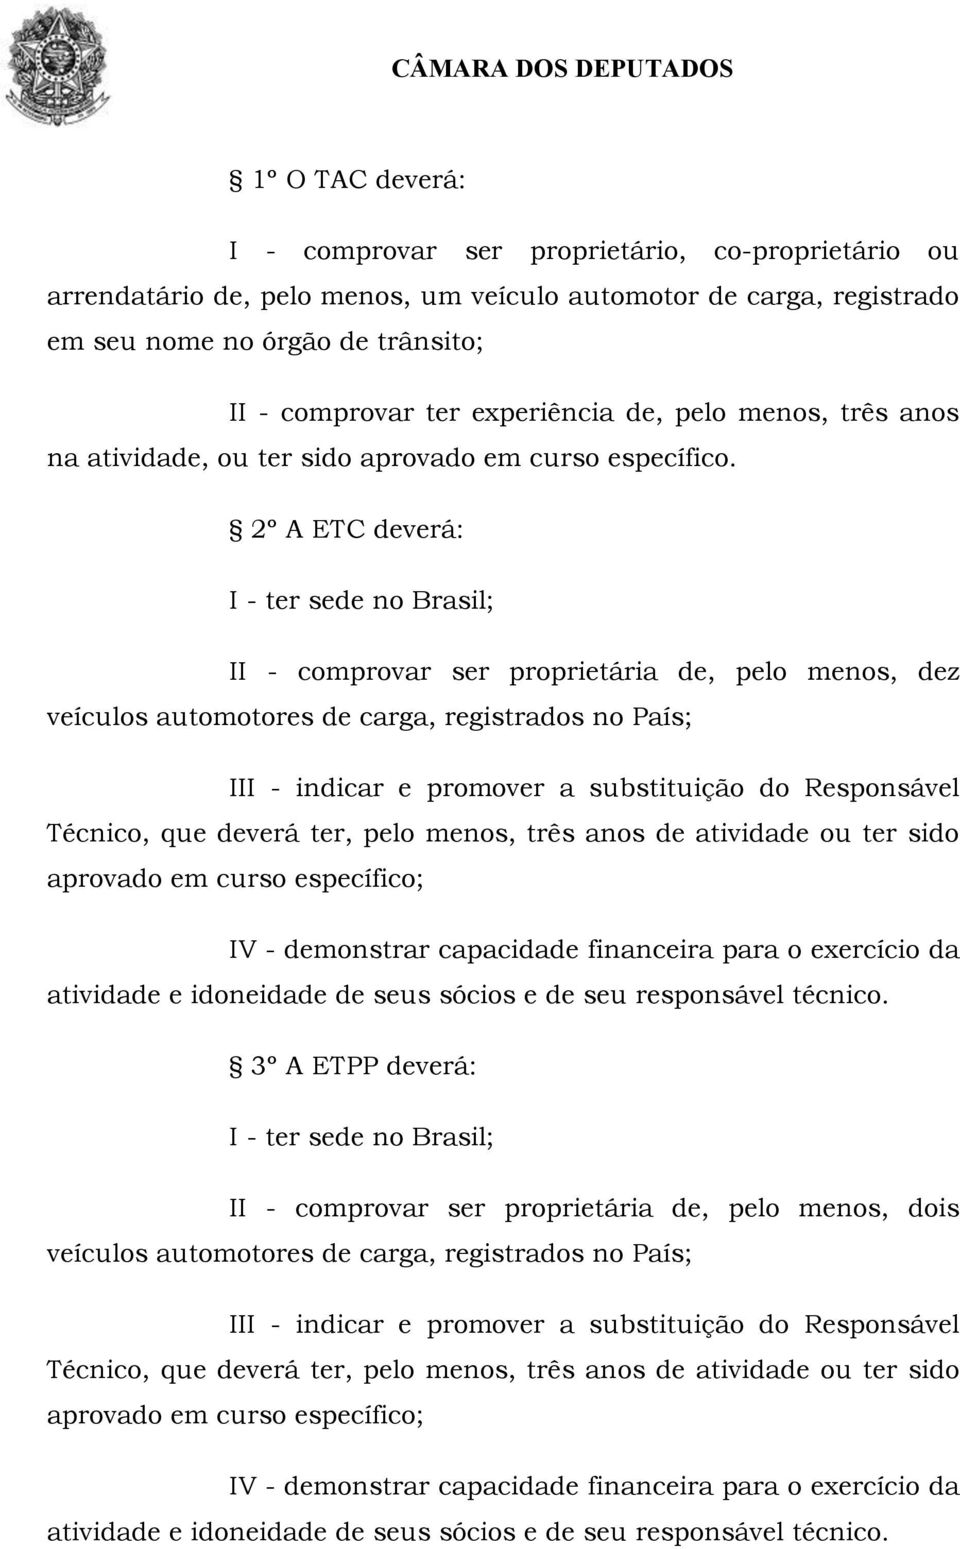 2º A ETC deverá: I - ter sede no Brasil; II - comprovar ser proprietária de, pelo menos, dez veículos automotores de carga, registrados no País; III - indicar e promover a substituição do Responsável